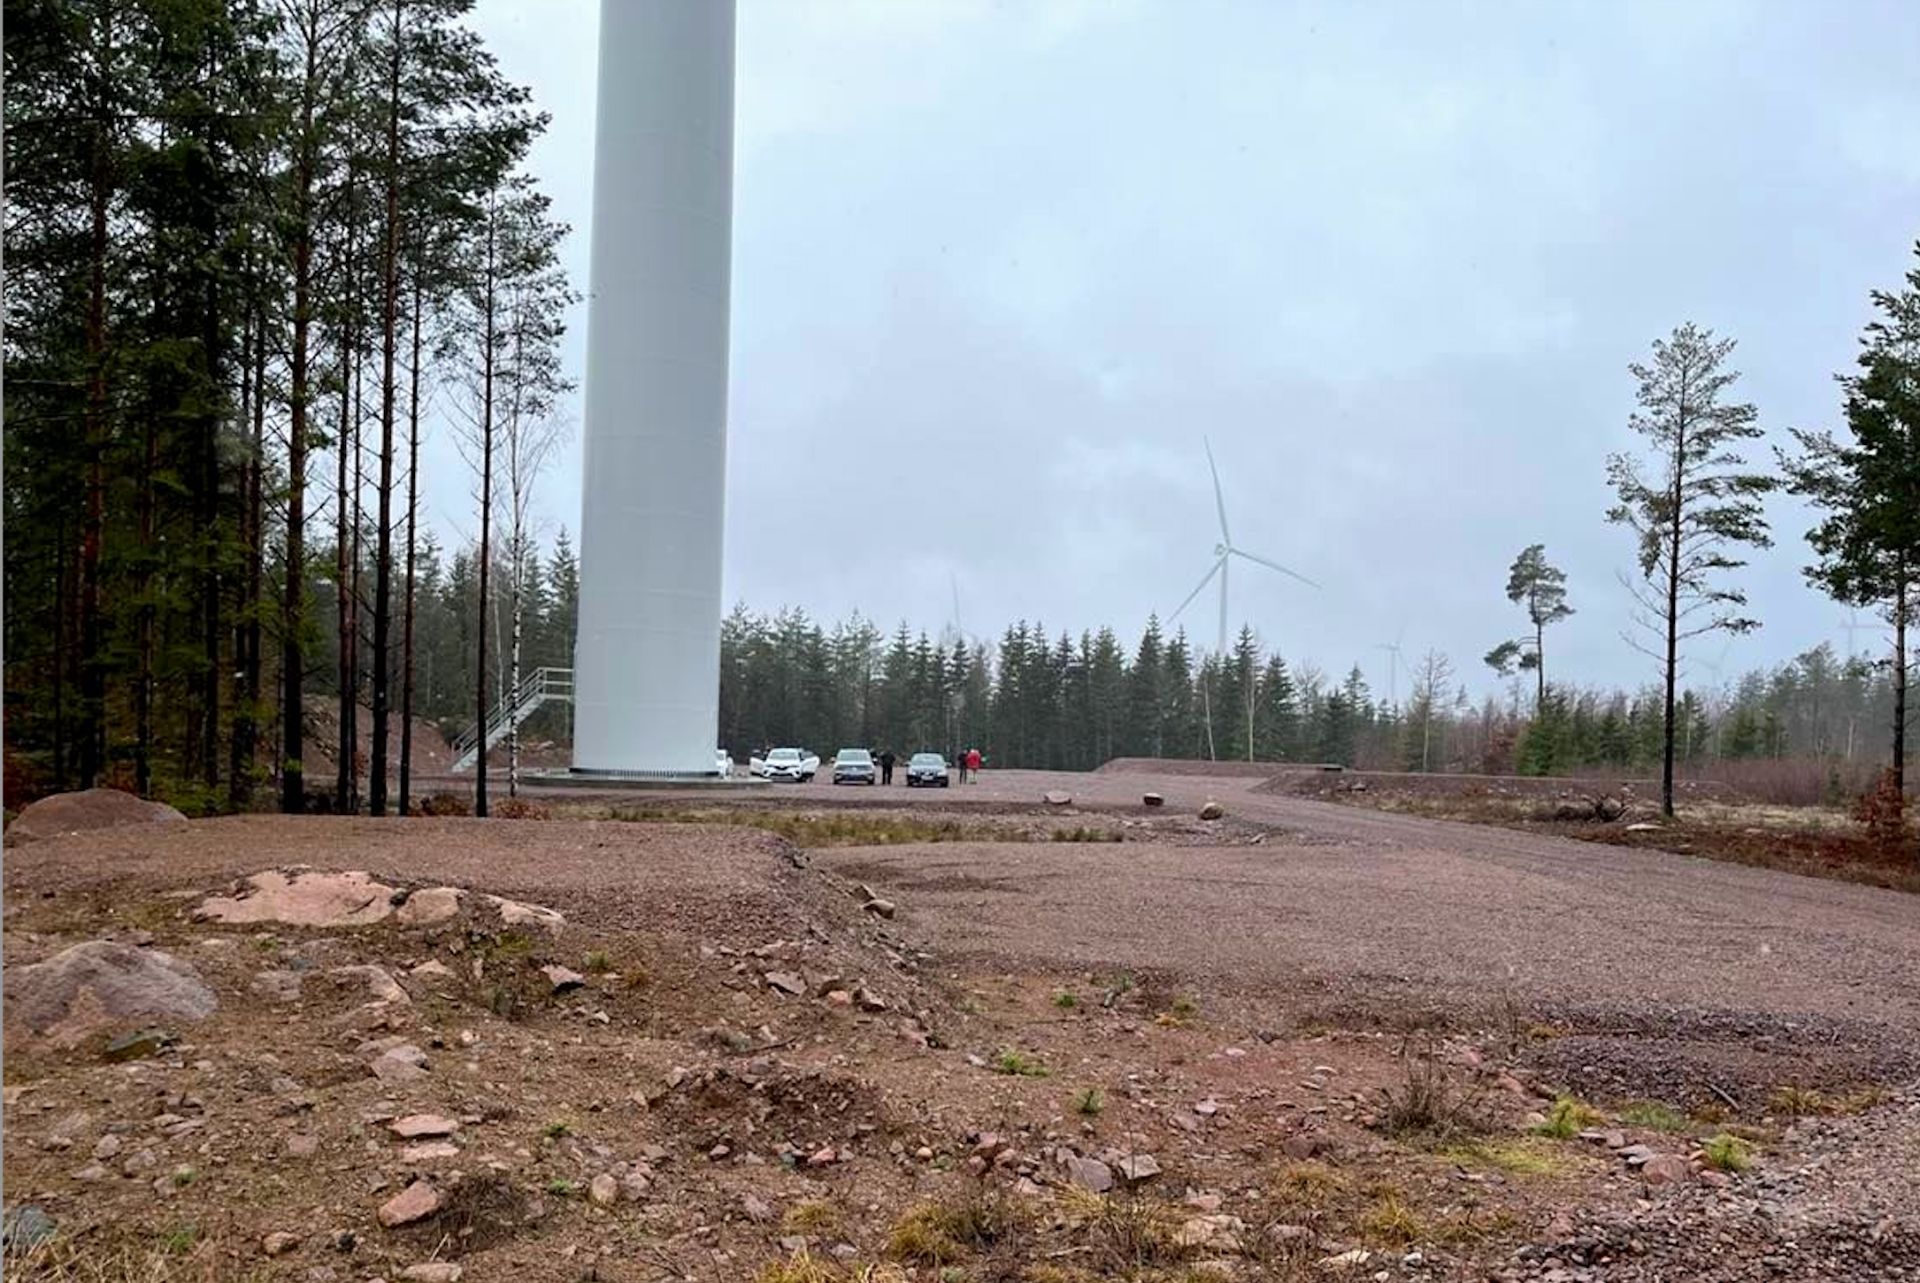 SR Energy's vindindustrianläggning Åby-Alebo (Mönsterås kommun). Föreningen Mot vindkraftsutbyggnad i Läckeby-Rockneby-Bäckebo på besök, våren 2023. Foto © Charlotte Whitt.